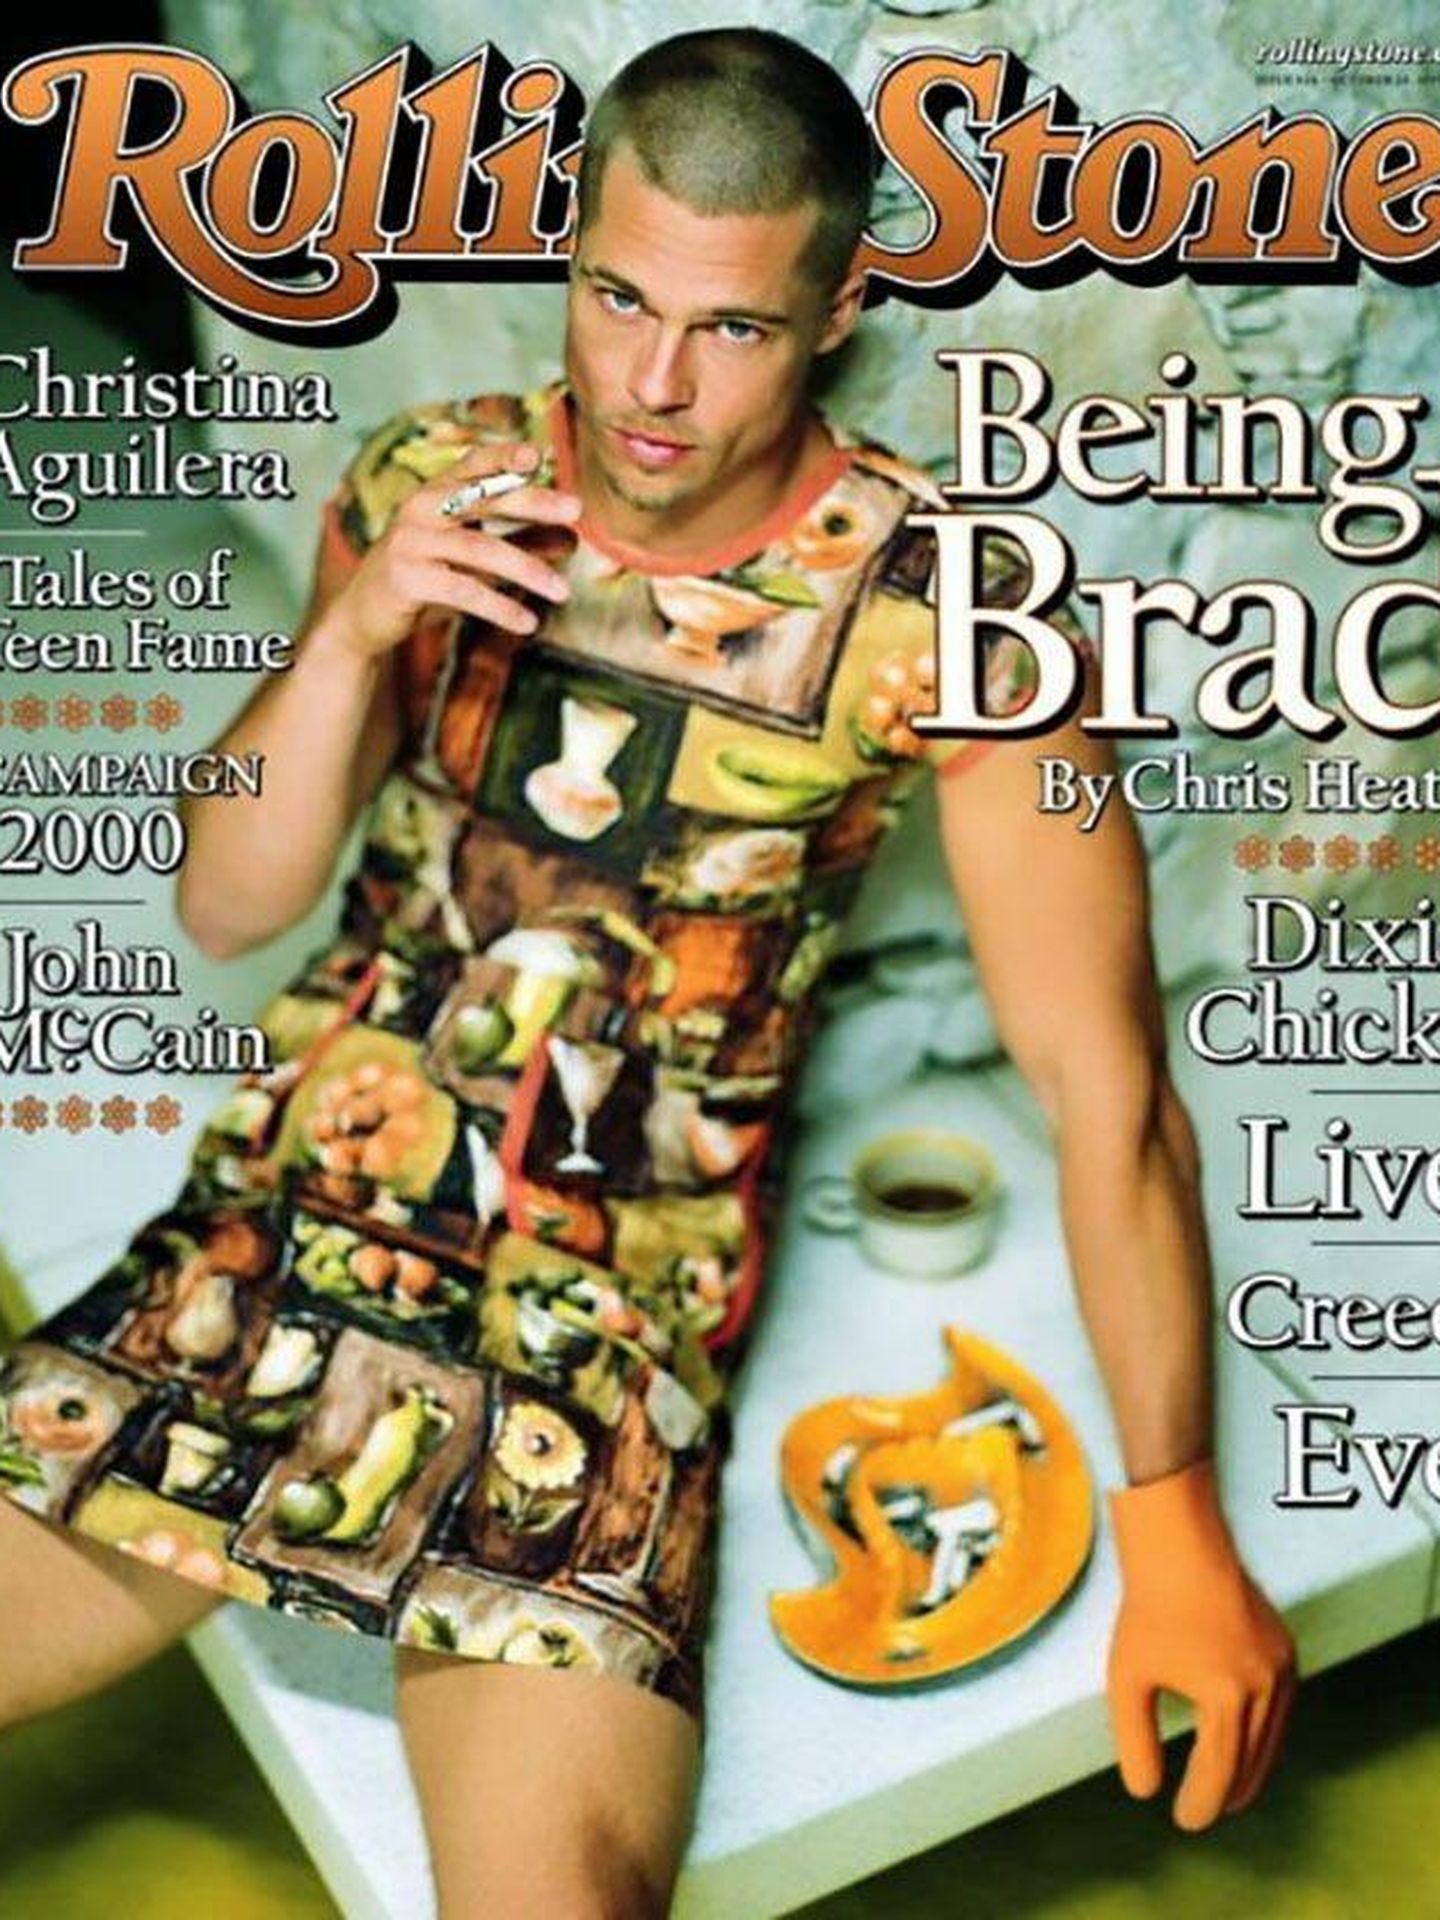 Brad Pitt, en la portada de 'Rolling Stone' de 1999 en vestido. (Cortesía)